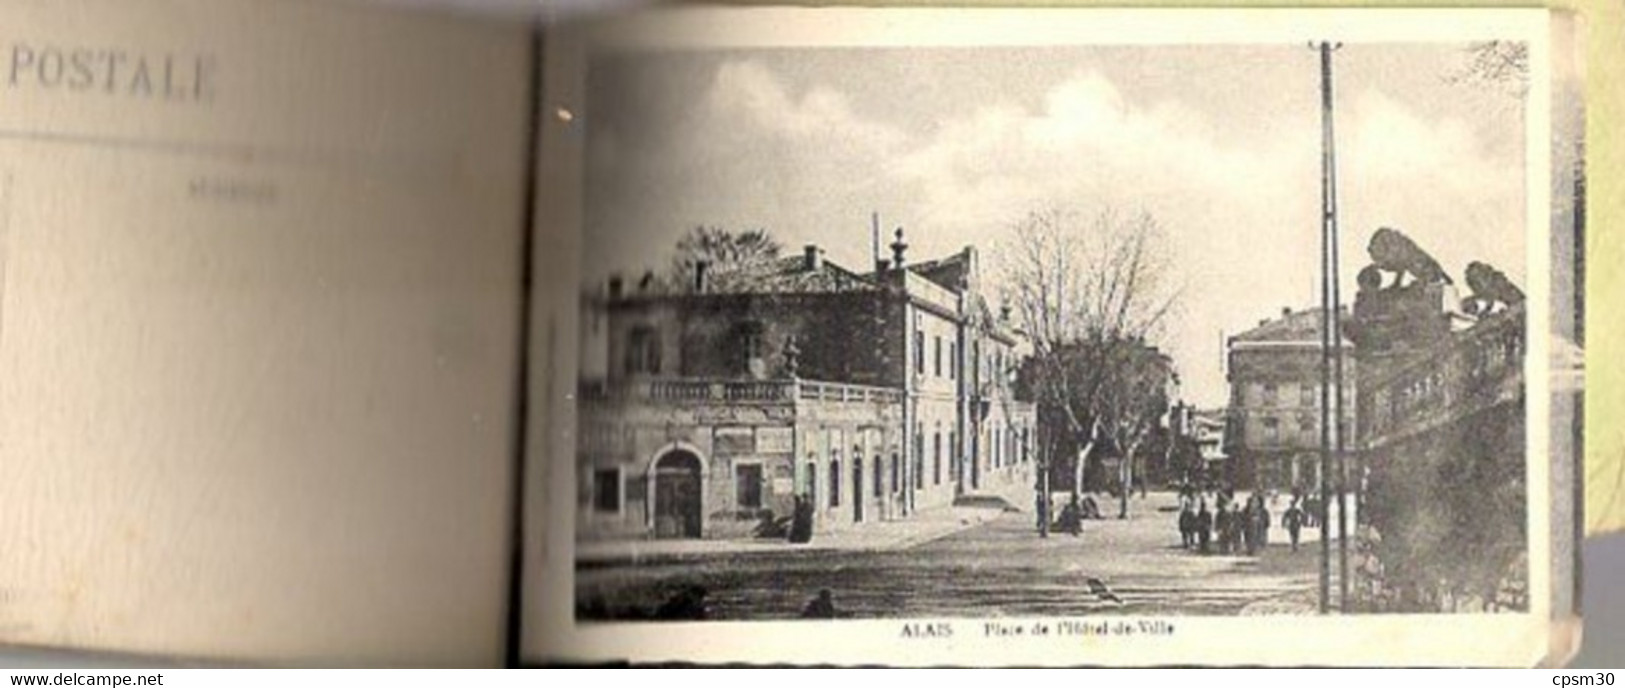 CP Ales, carnet de CPA, vue générale, pont vieux, place République, tribunal lycée, mairie, Rochebelle, voir photo